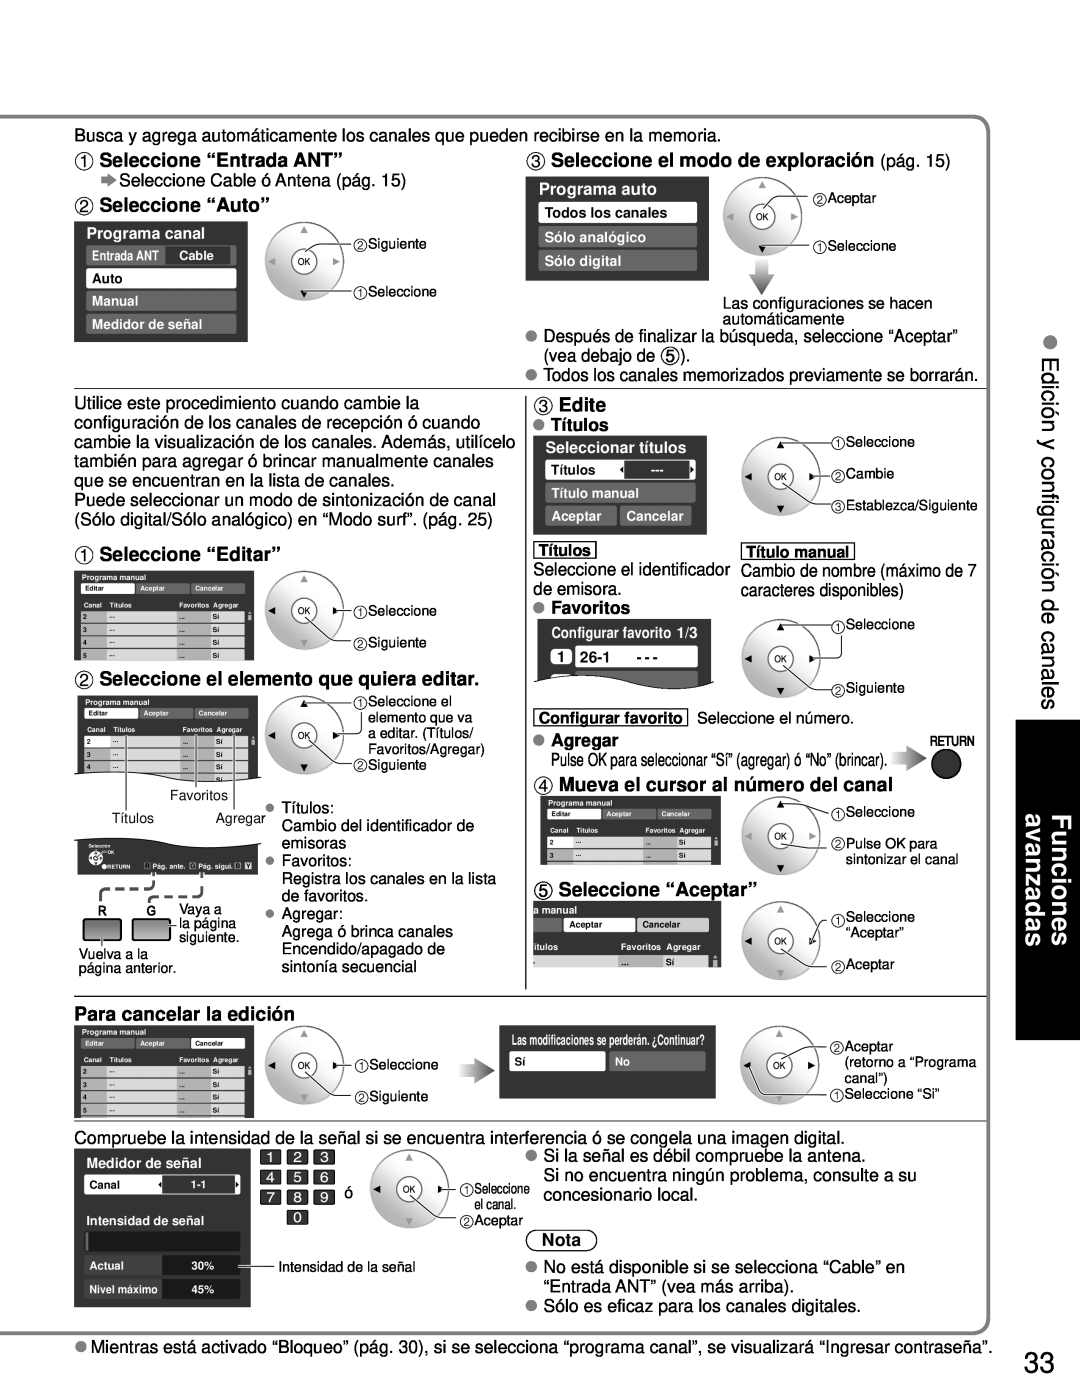 Panasonic TH-46PZ80U Seleccione “Auto”, Seleccione el modo de exploración pág, Seleccione “Editar”, Edite, Títulos, Nota 